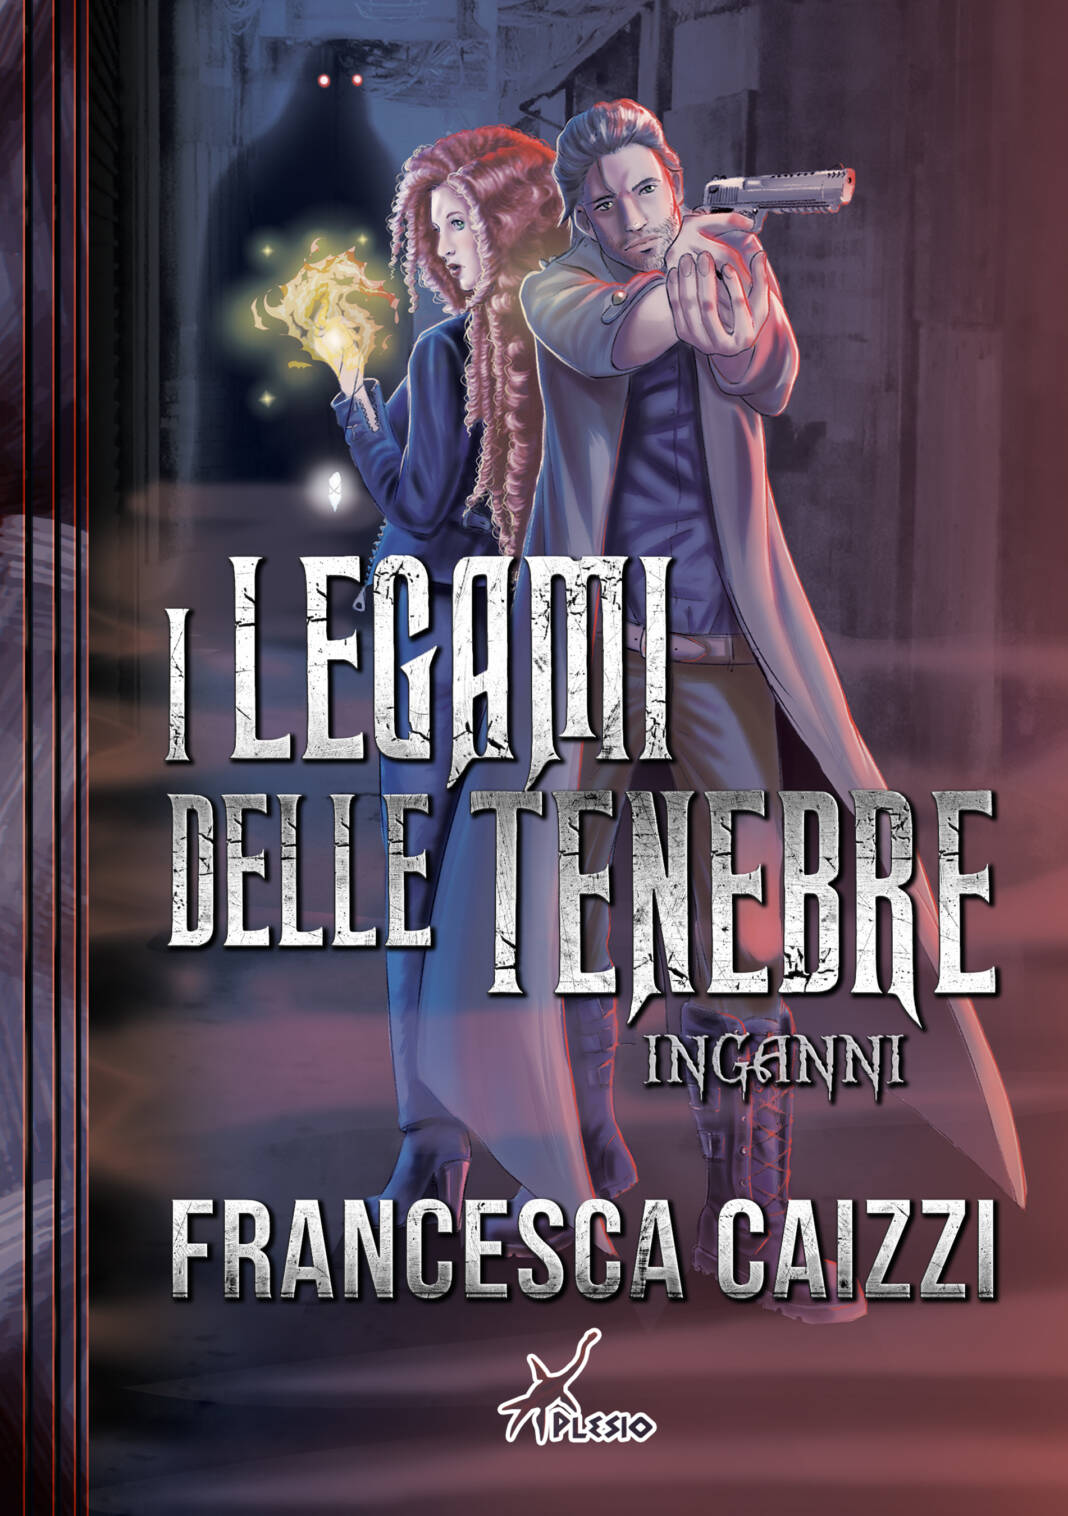 Francesca Caizzi, 'I legami delle tenebre – Inganni' per Plesio Editore